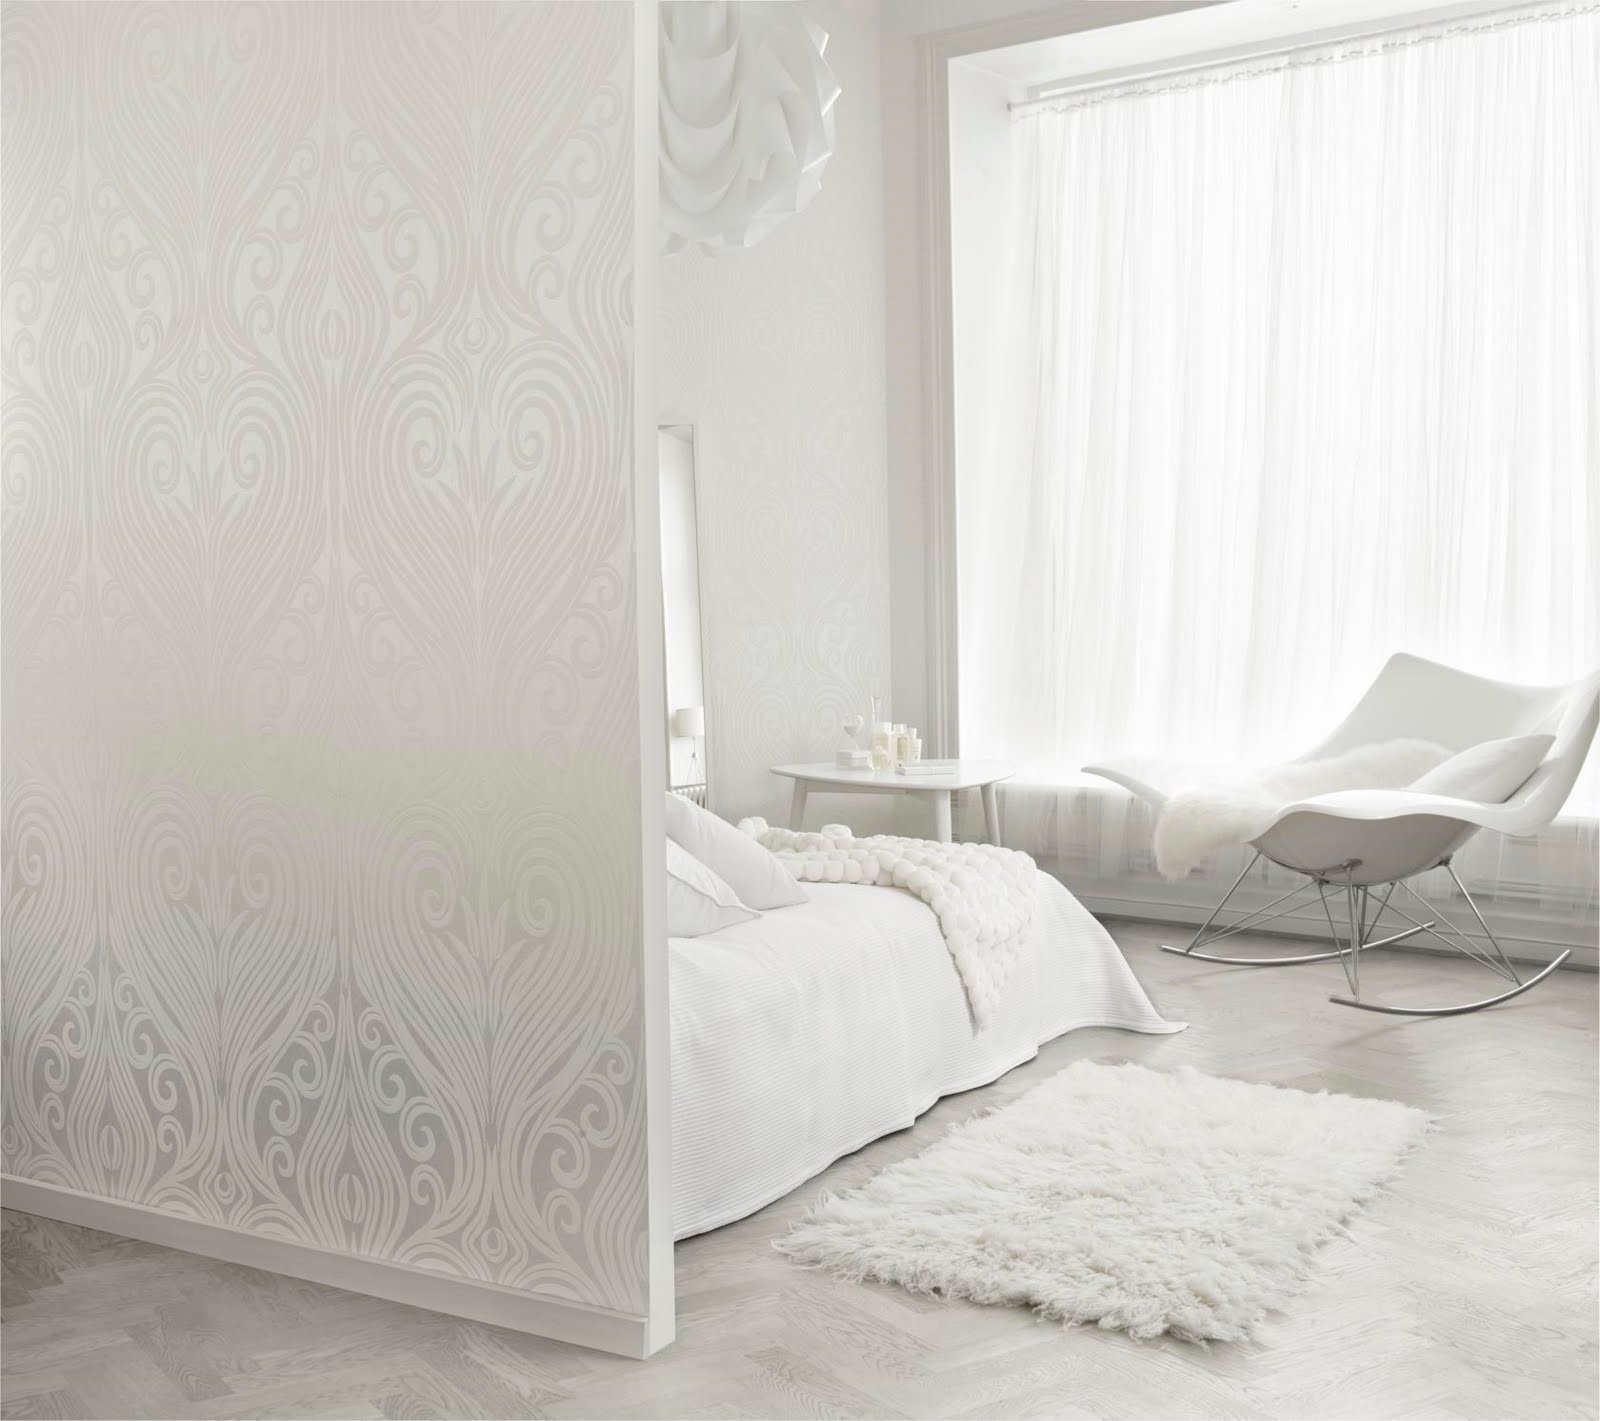 Design Shimmer: White walls